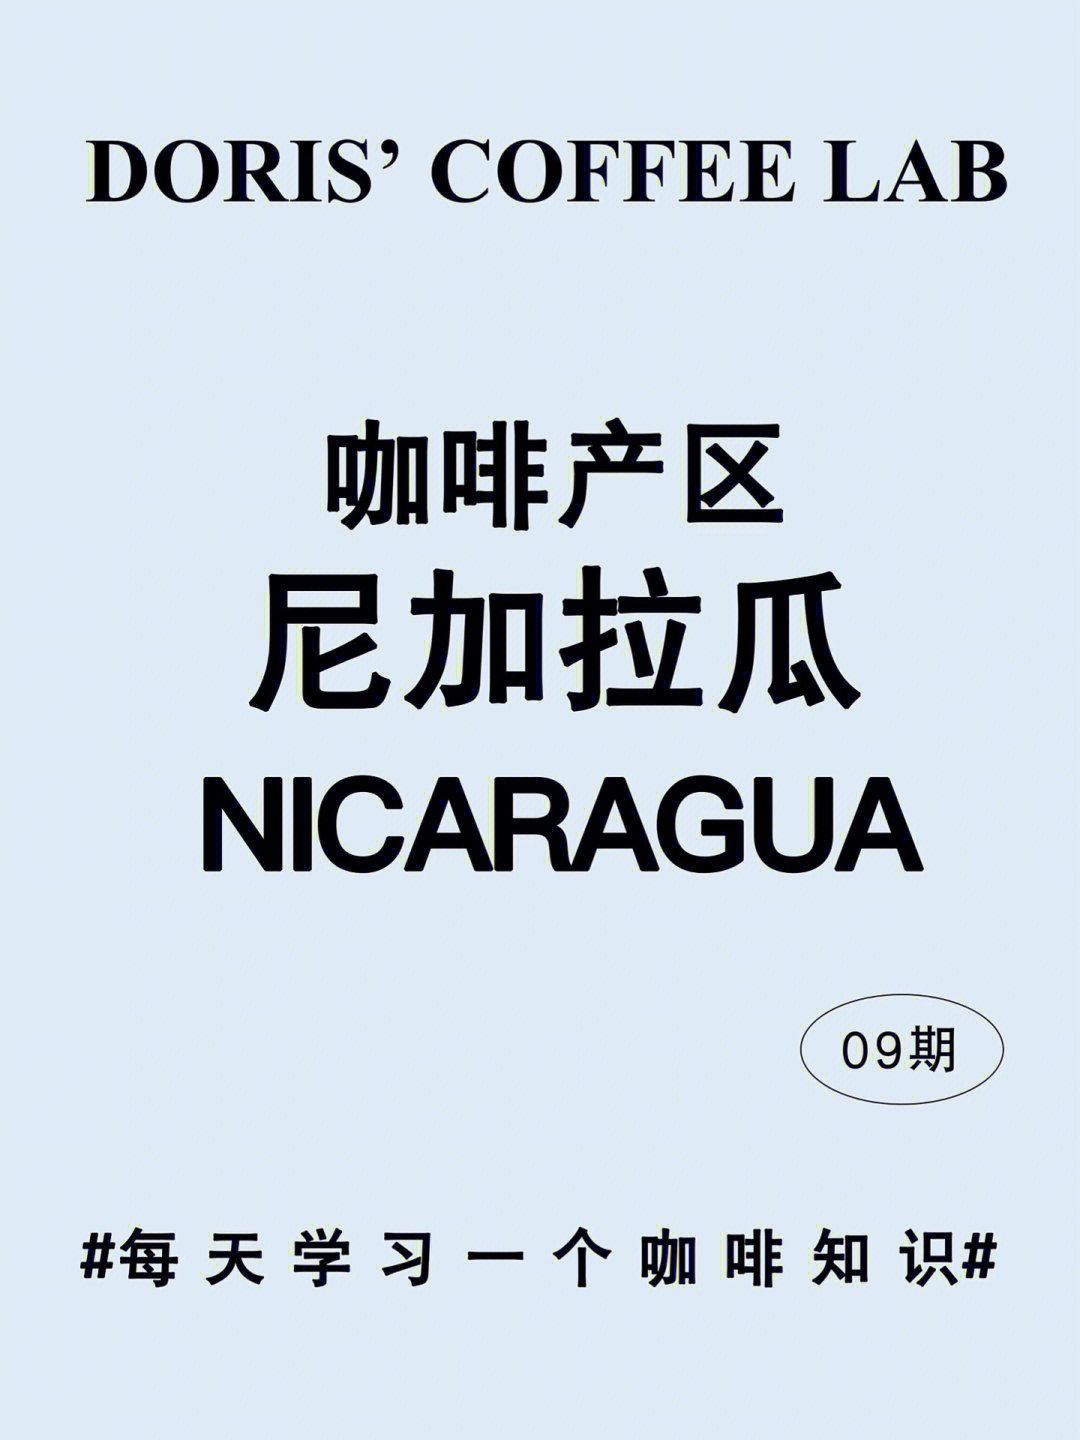 【第九期】我们分享咖啡发源地——尼加拉瓜1 